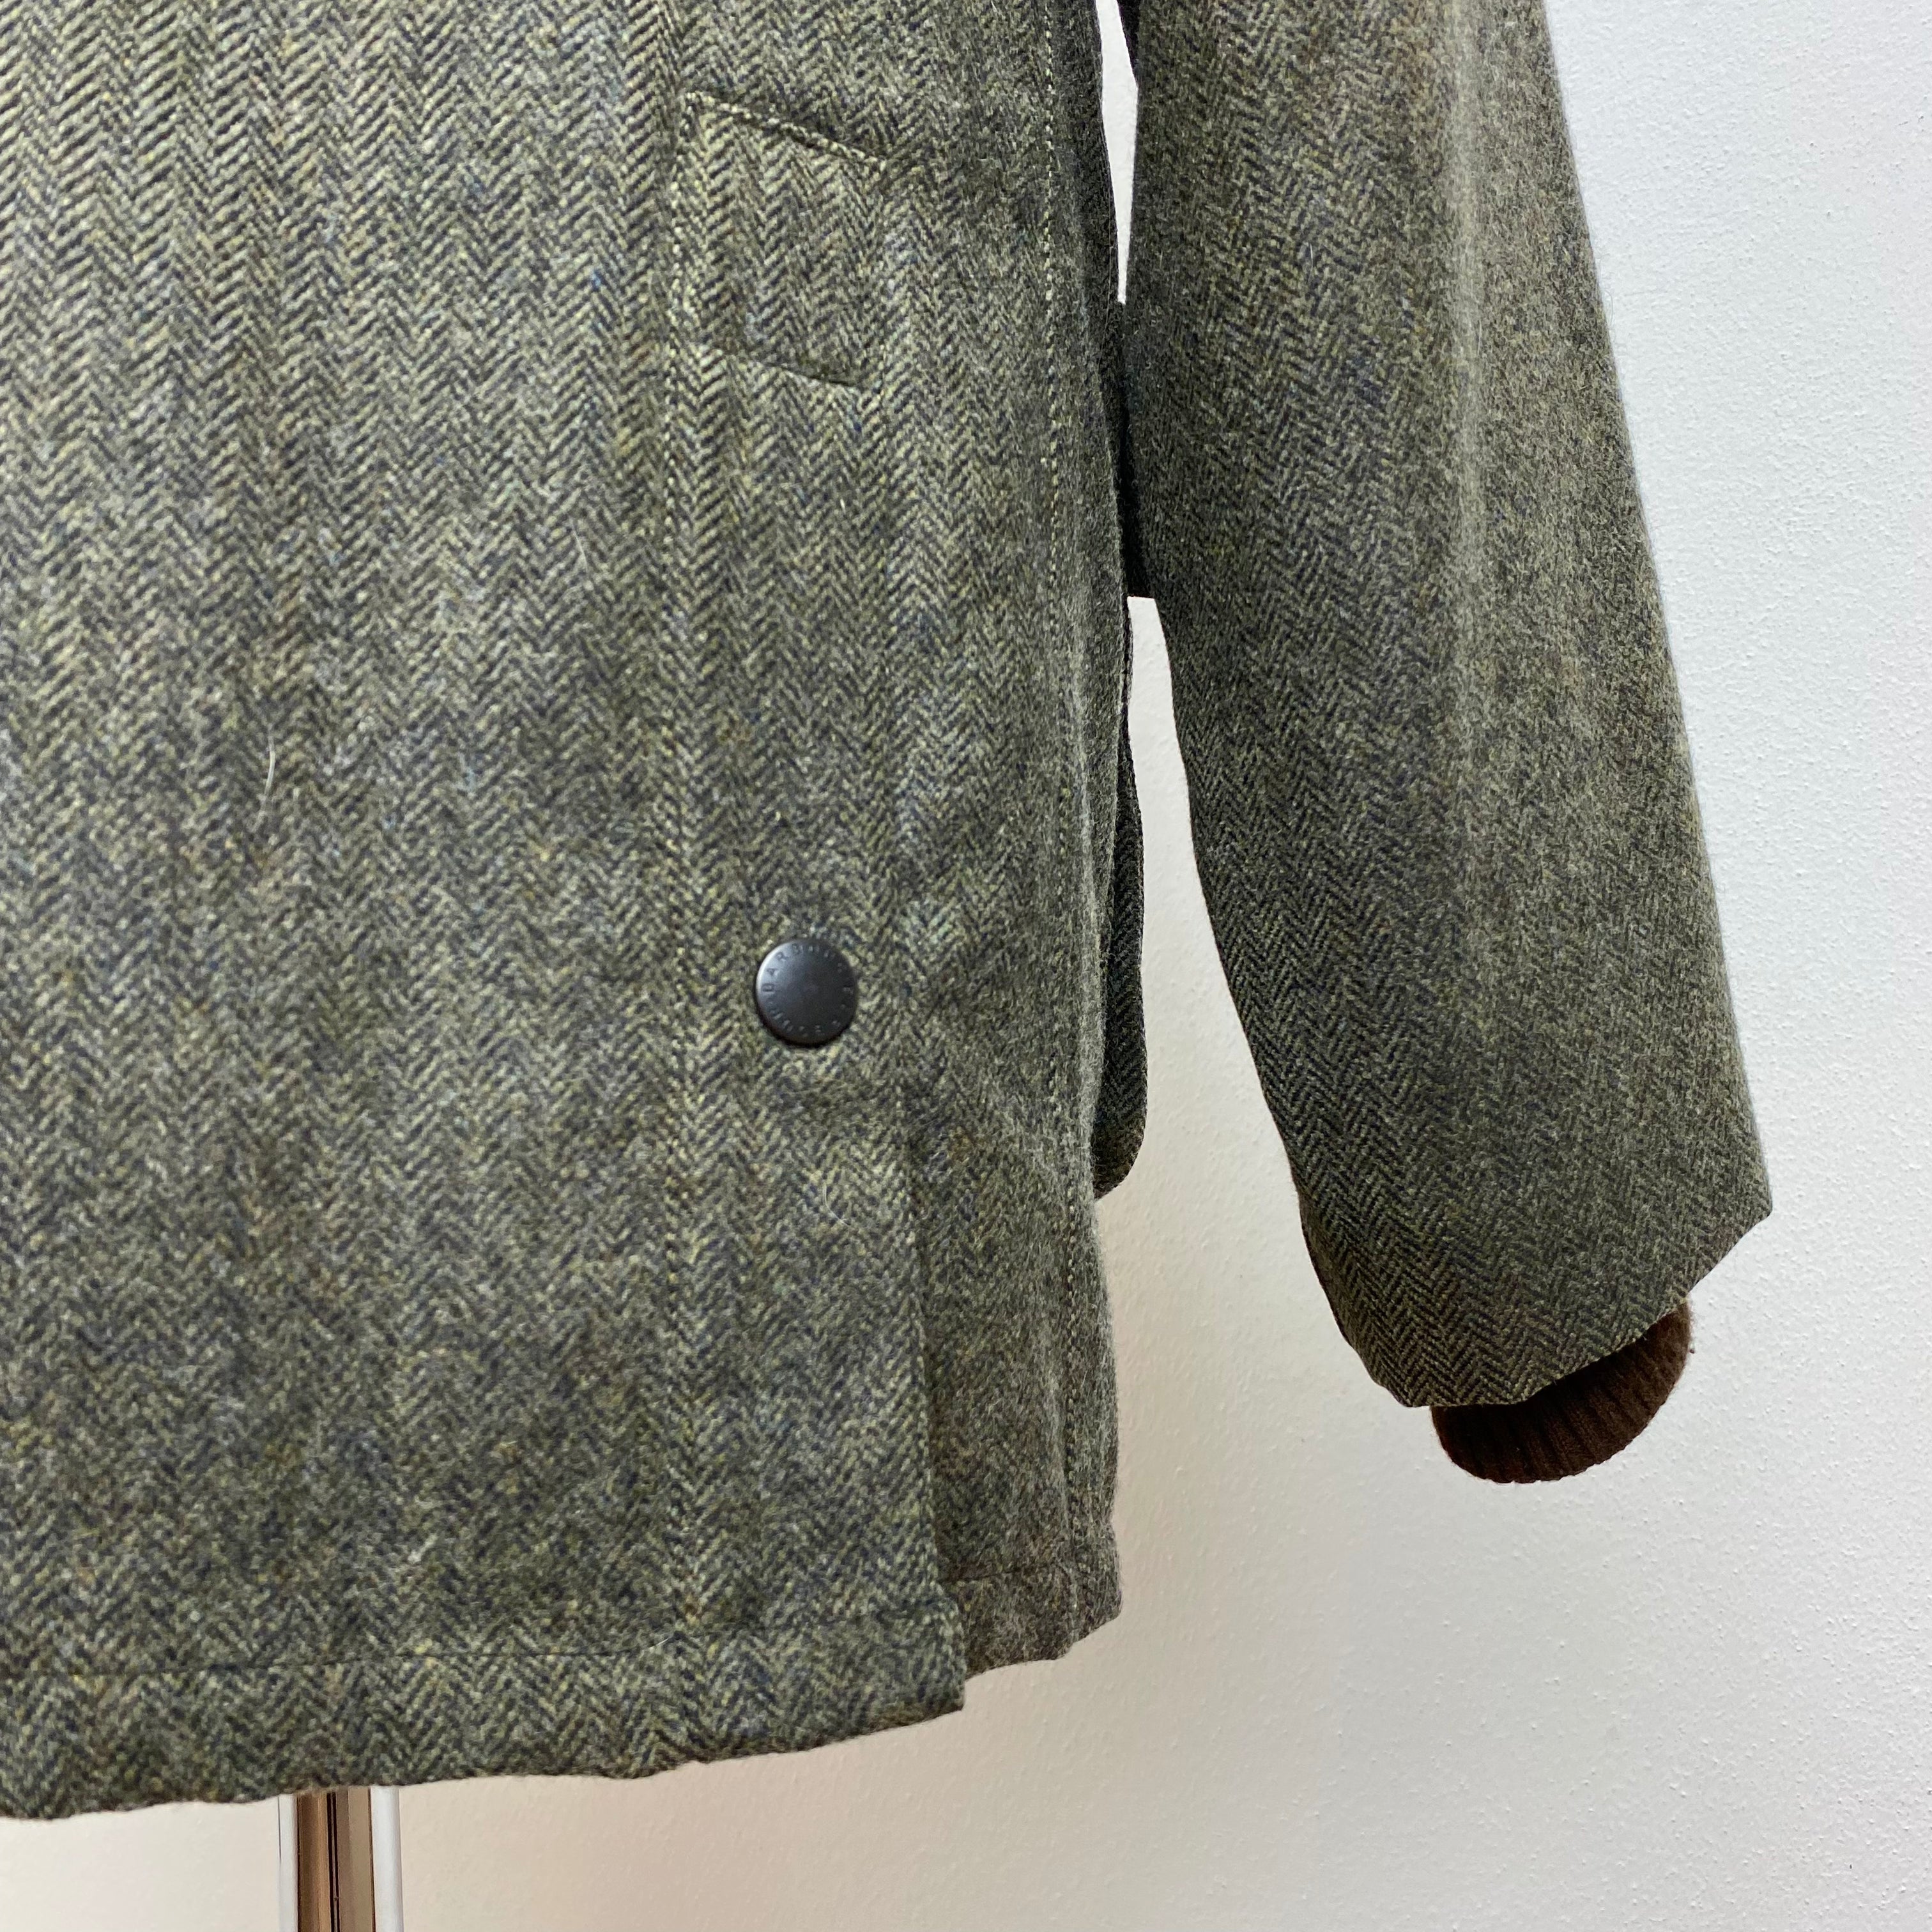 Japanese S. L. Bedale Green Wool Herrigbone - 42